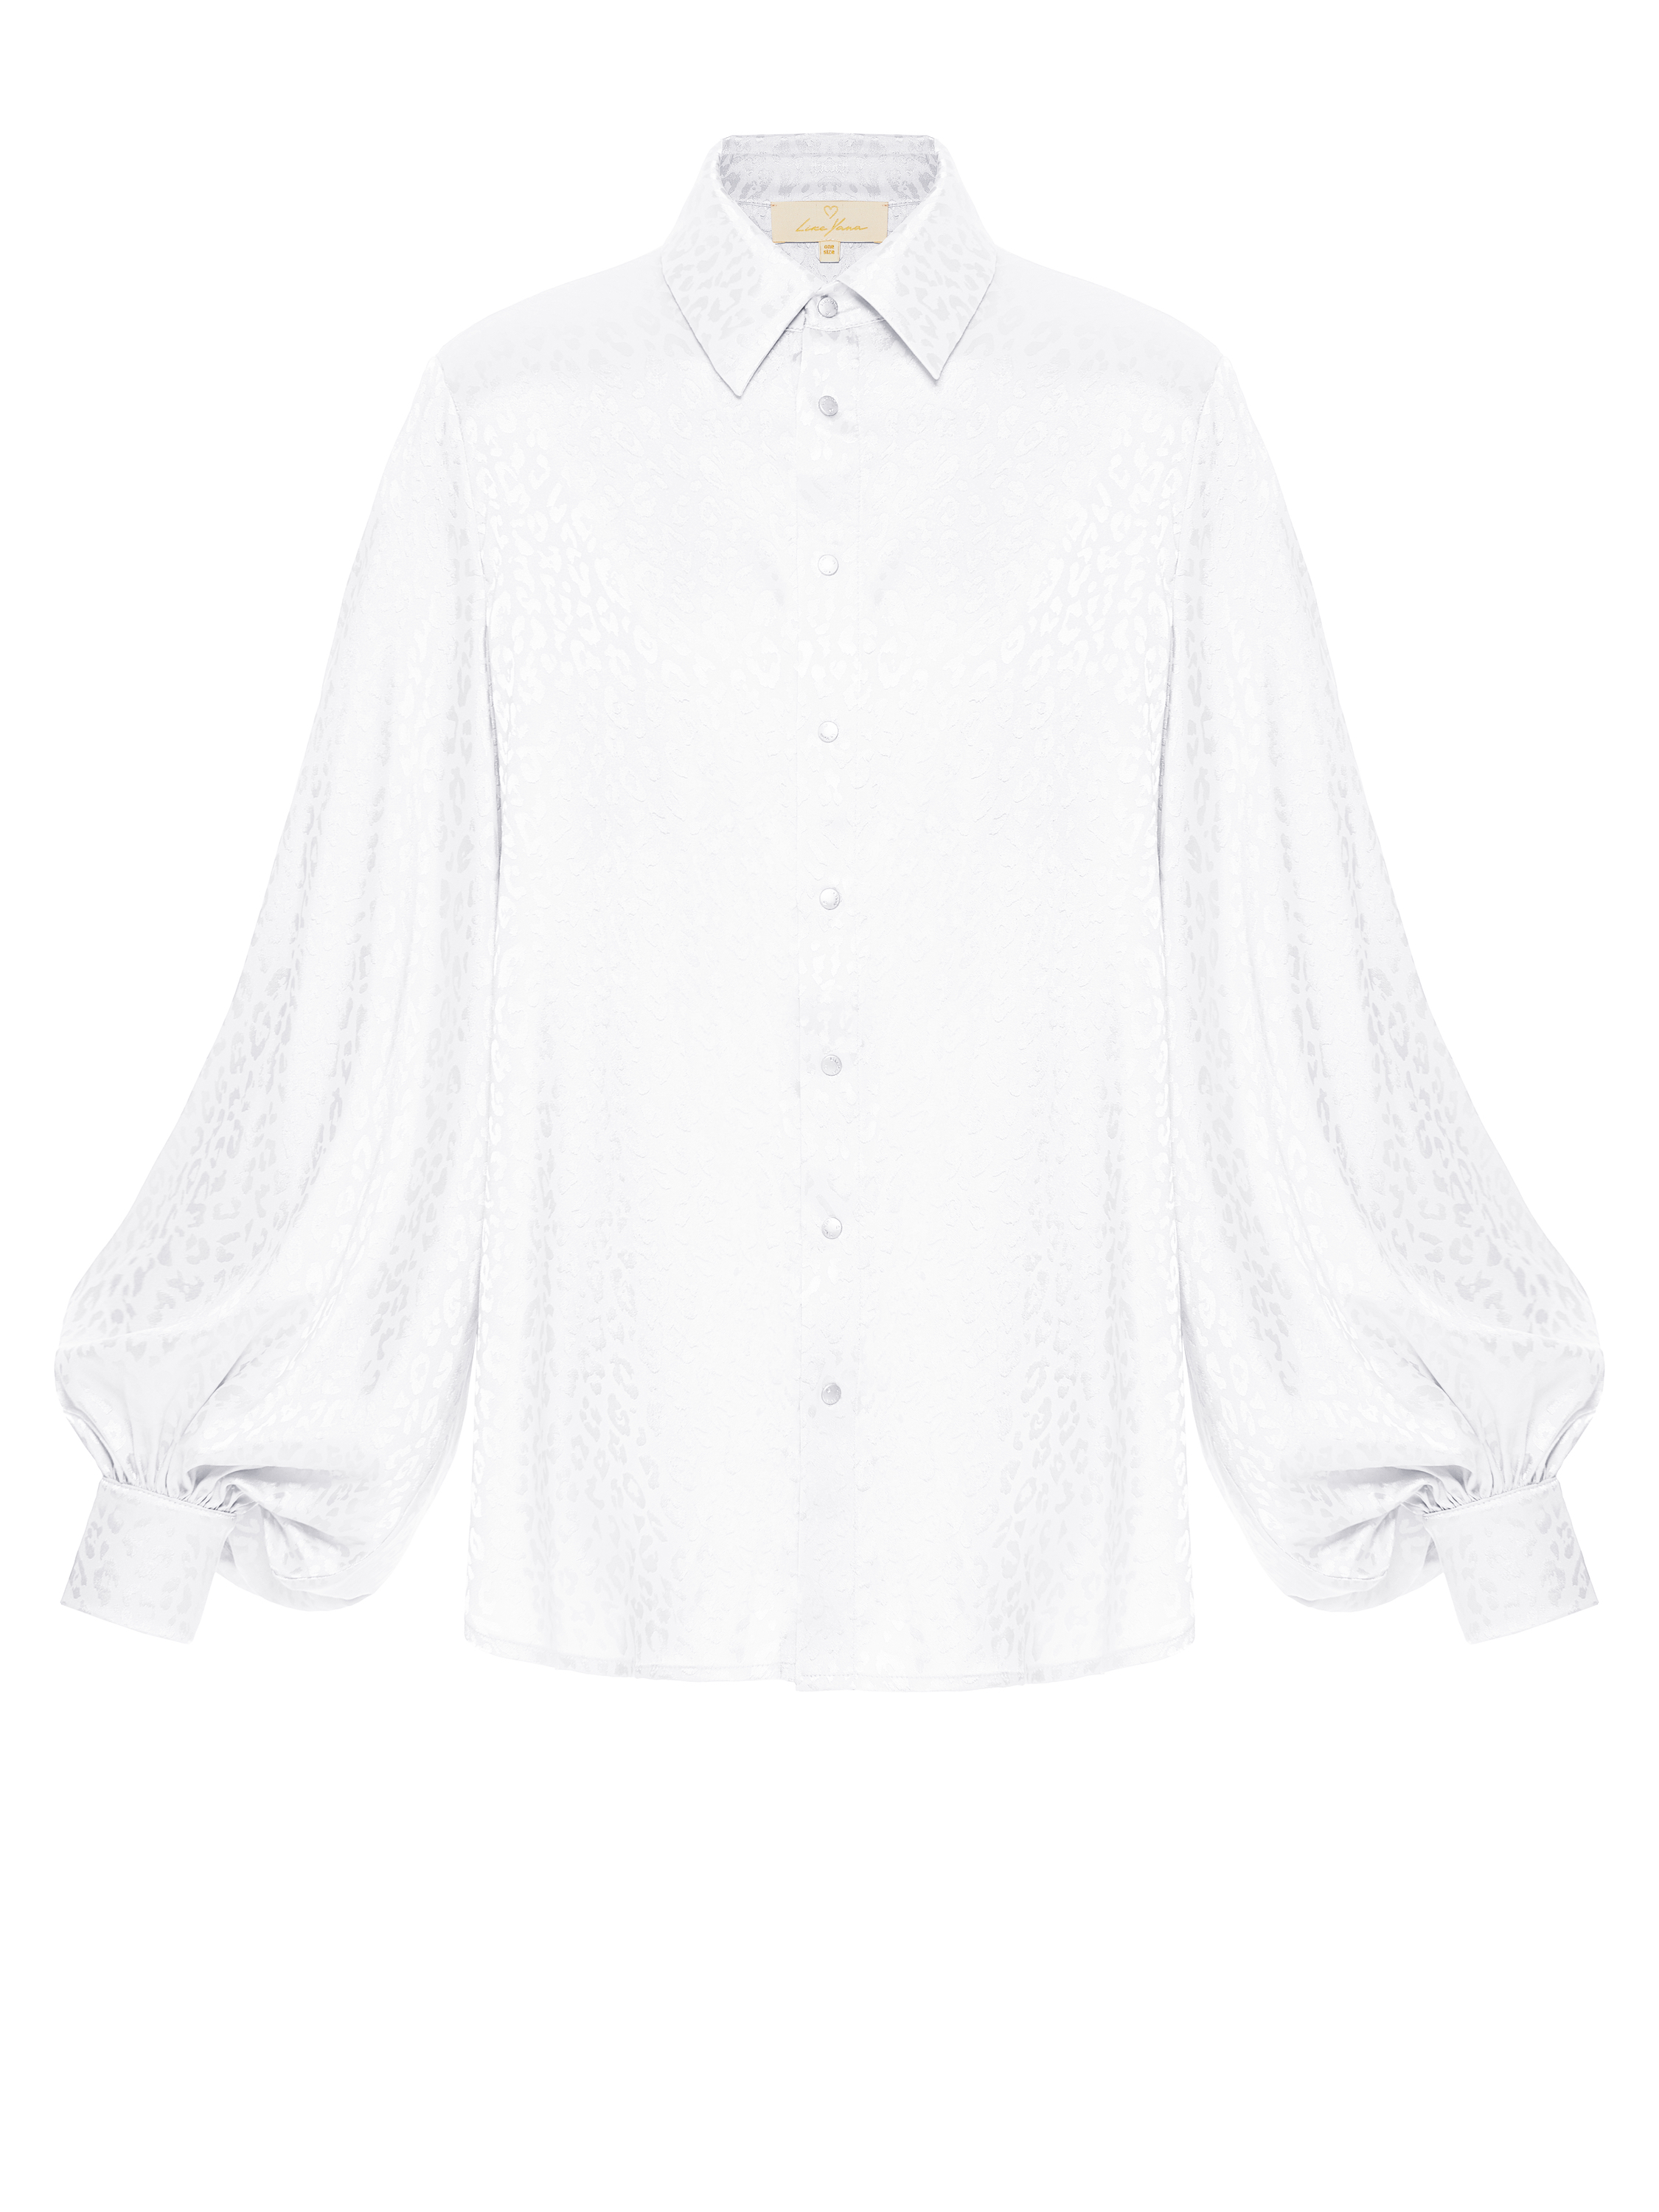 Белая блузка из вискозы с узором, артикул L16-30-071.1-1102/9